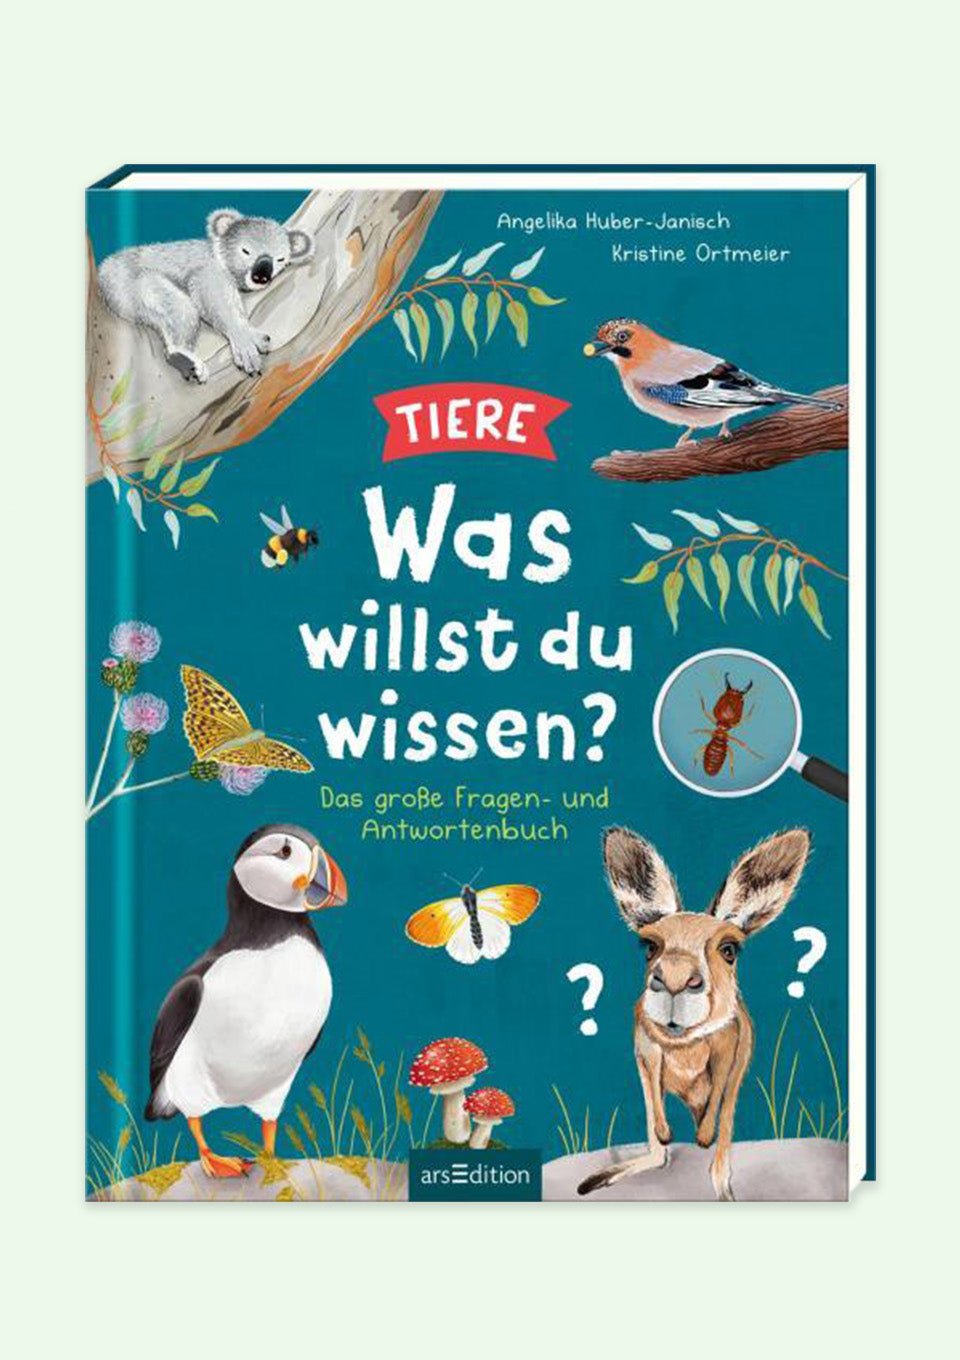 arsEdition Kinderbuch "Was willst du wissen? - Tiere" - tiny-boon.com